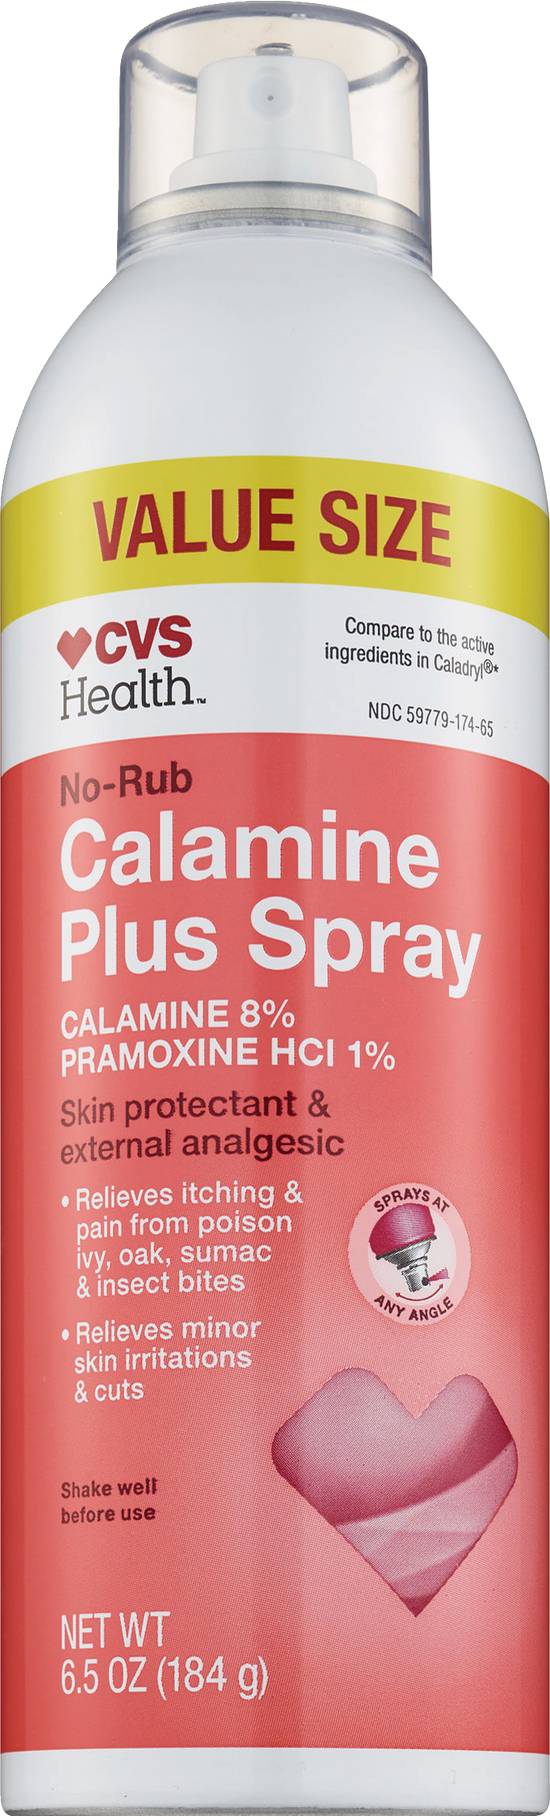 Cvs Health No Rub Calamine Plus Spray